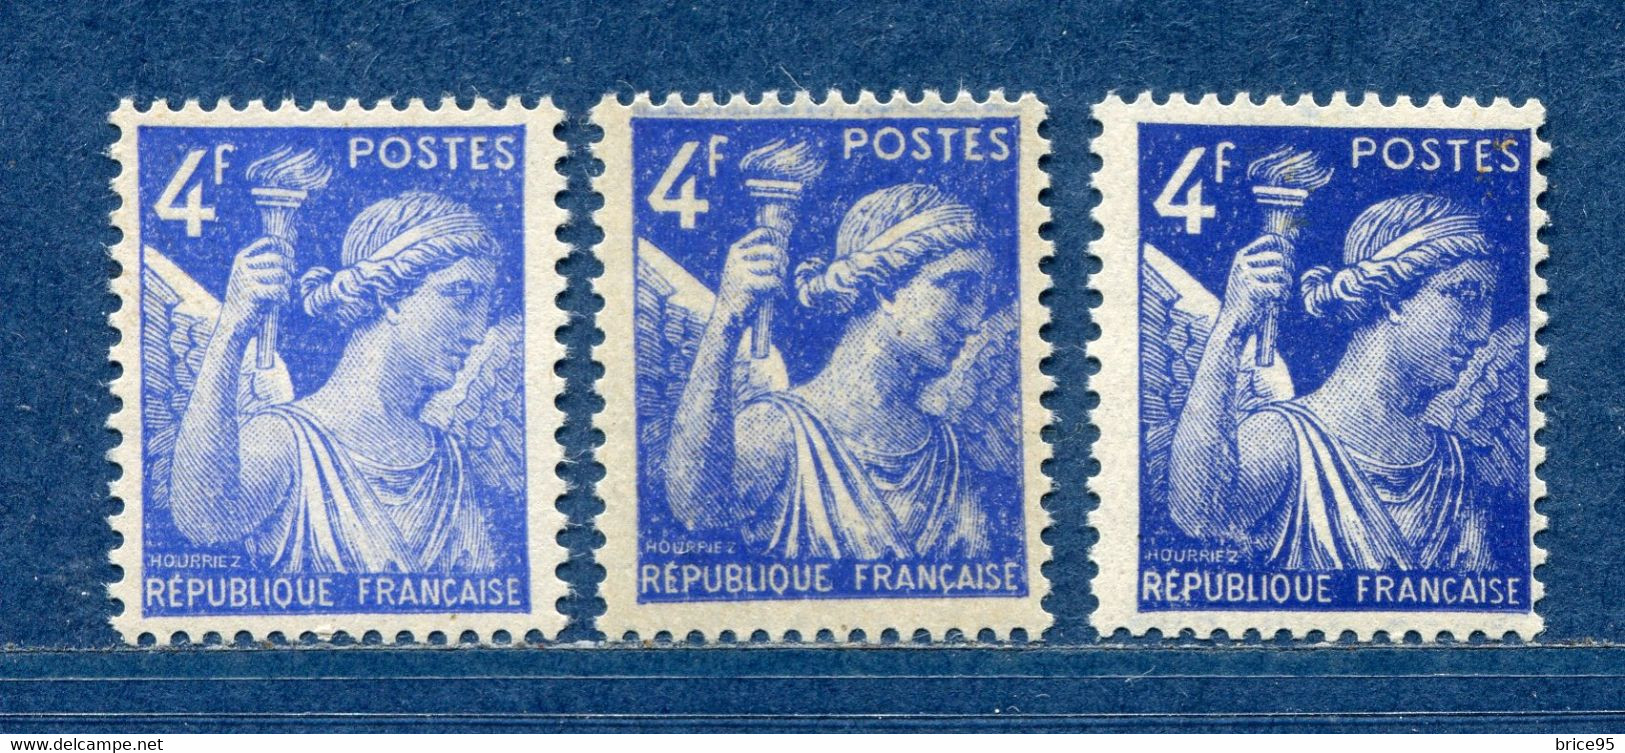 ⭐ France - Variété - YT N° 656 - Couleurs - Pétouilles - Neuf Sans Charnière - 1944 ⭐ - Nuovi